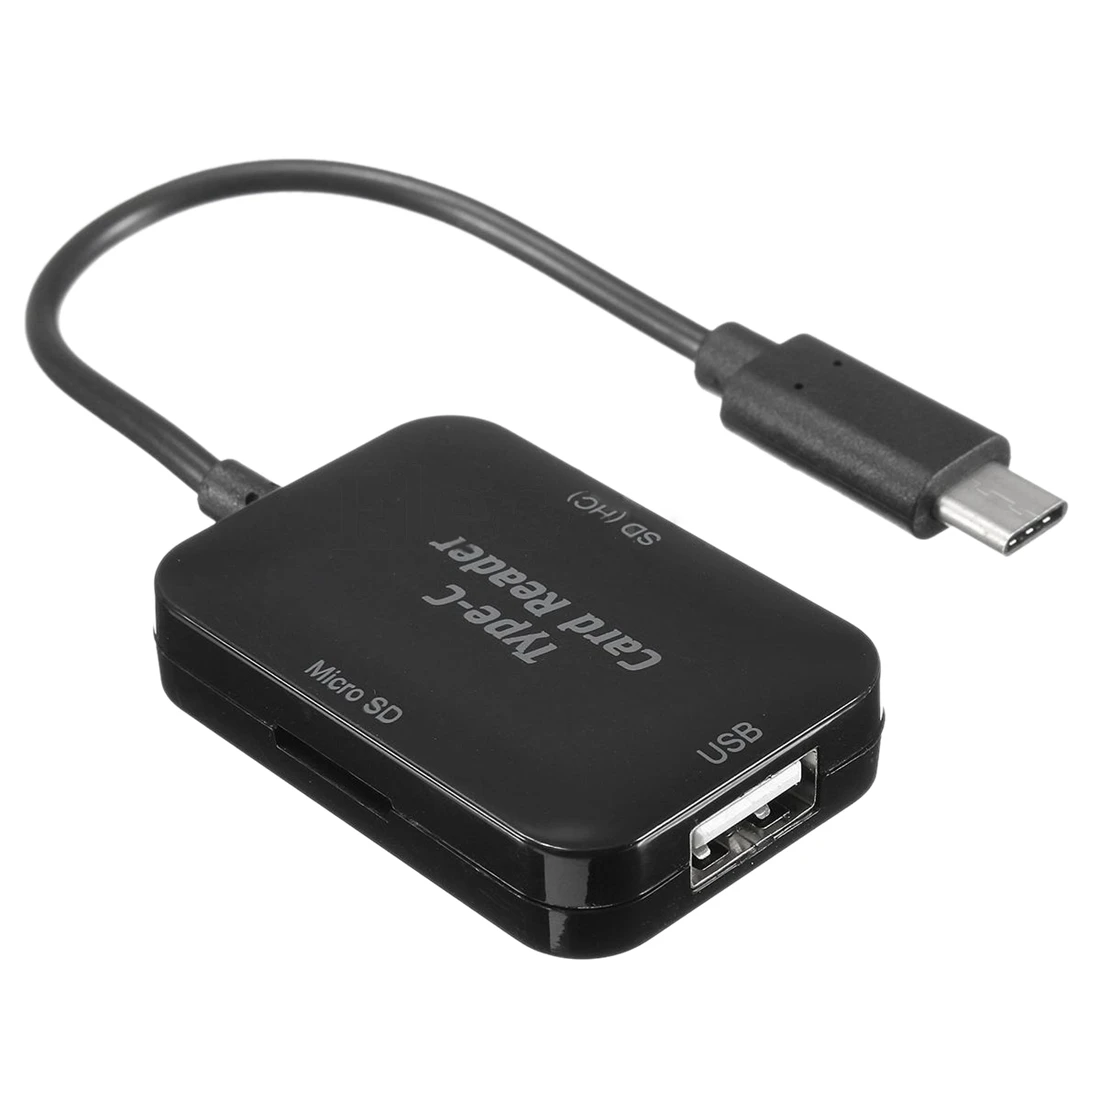 Горячая Распродажа Тип usb C USB 2,0 концентратор SD TF картридер OTG адаптер для Macbook 12 дюймов черный